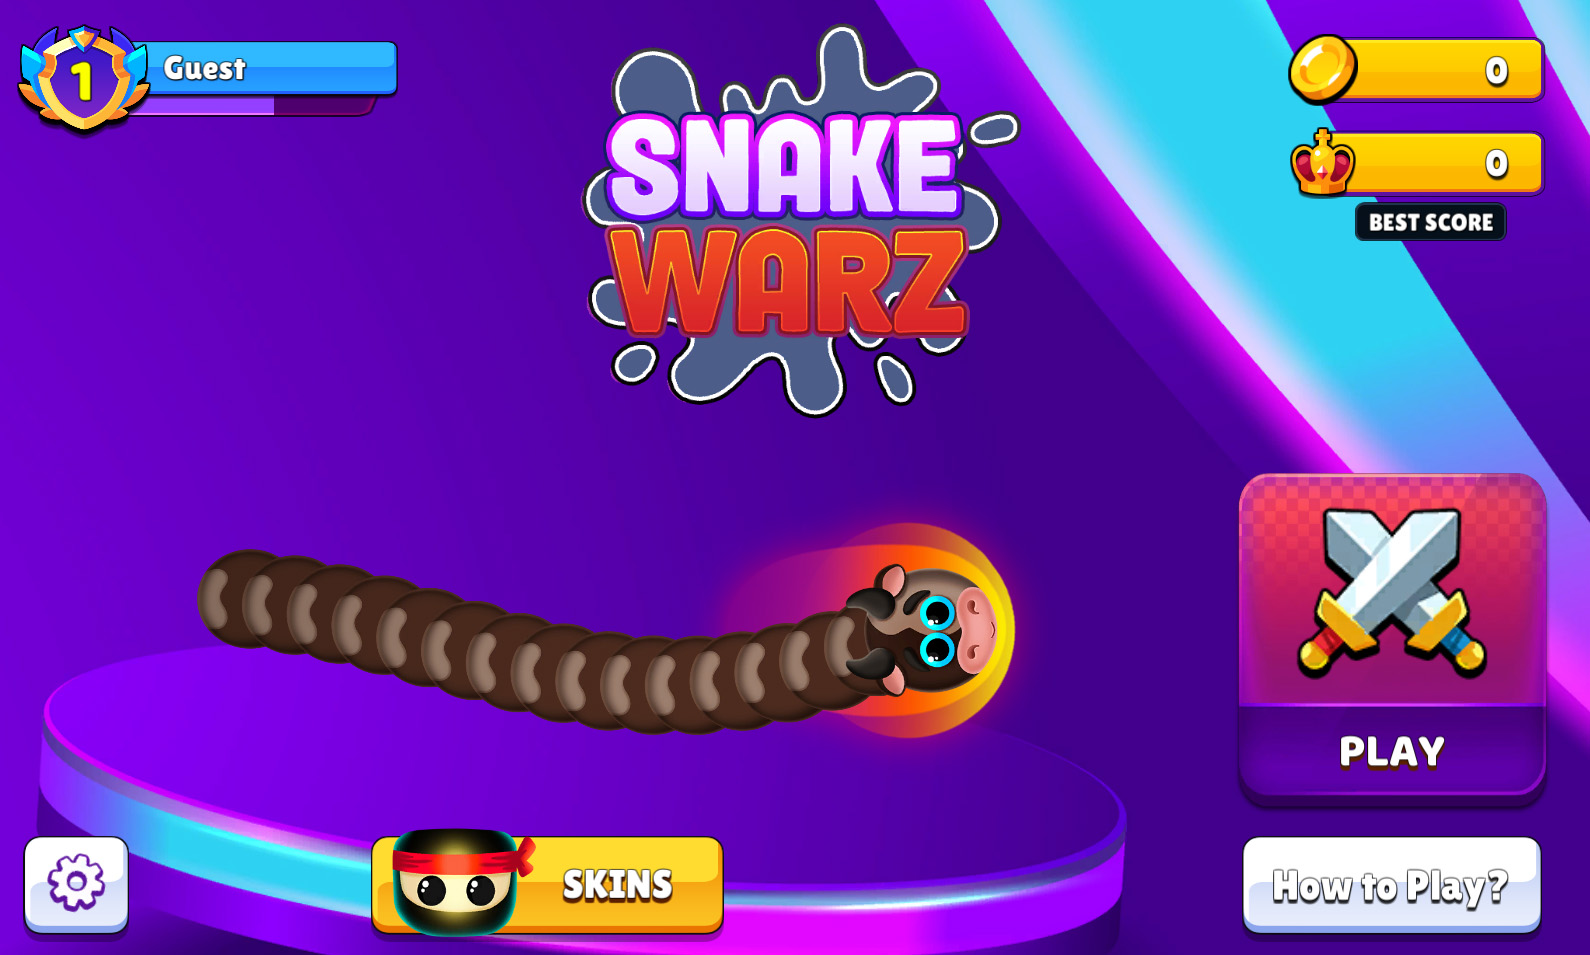 Unity Snake Game - Apresentação do jogo Snake Game 